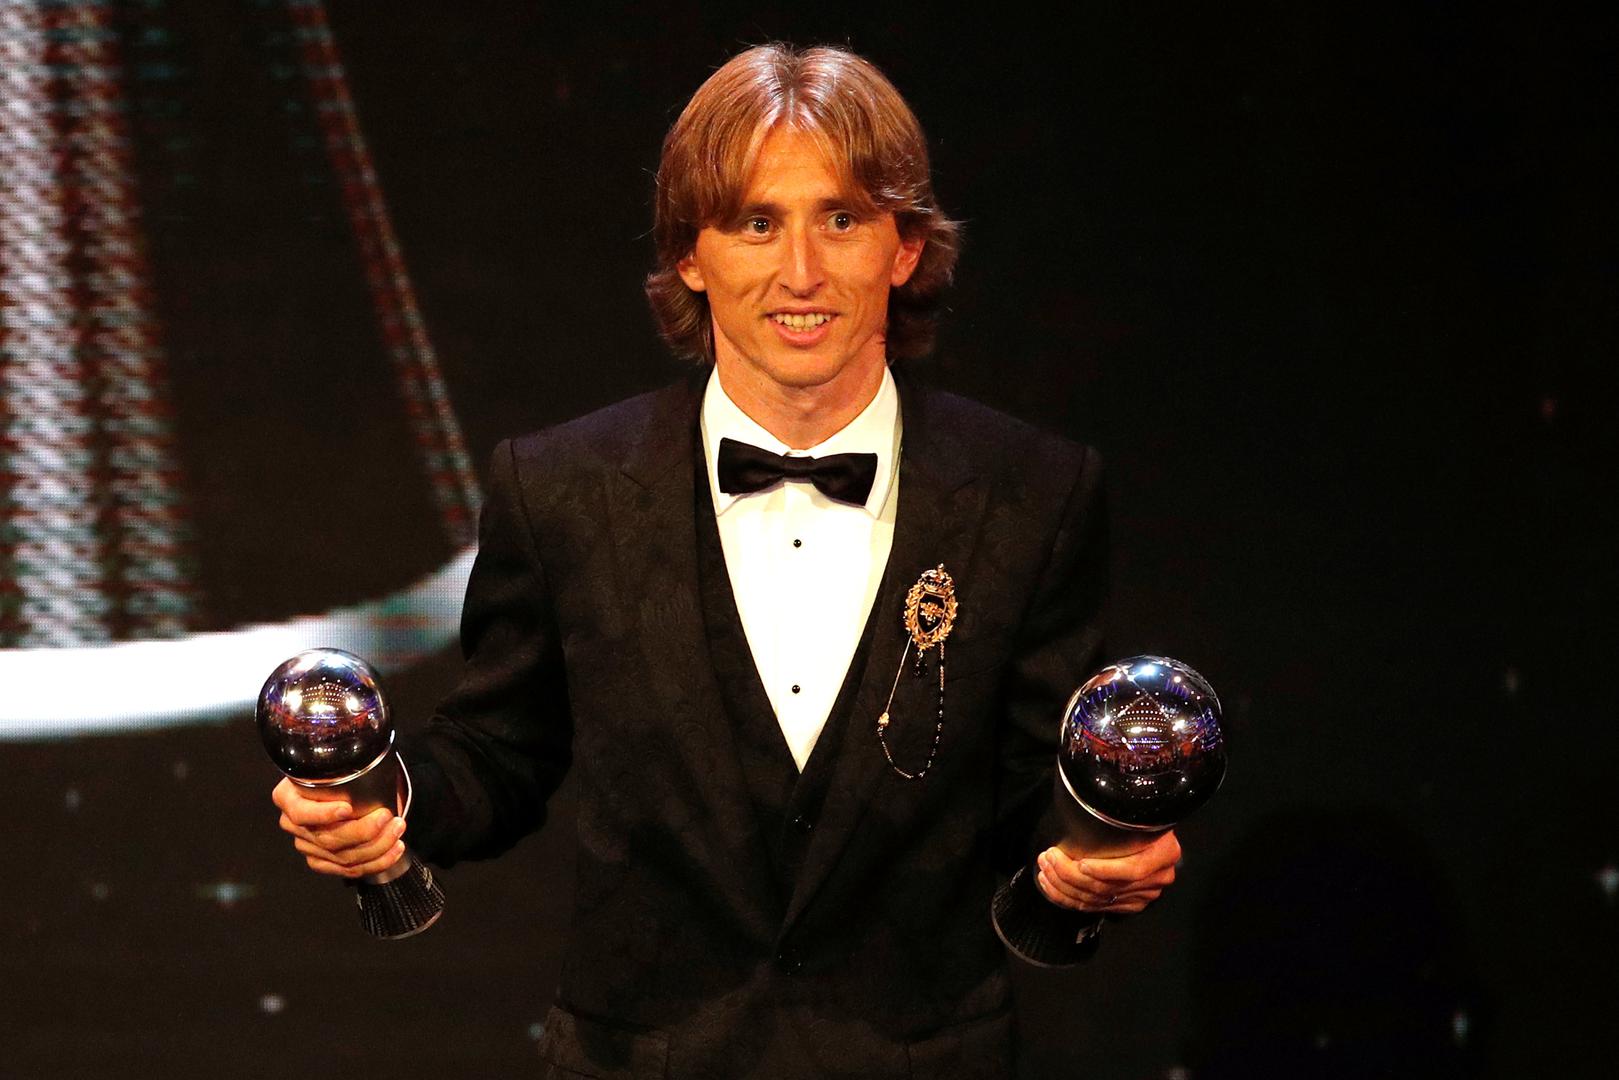 Luka Modrić najbolji je nogometaš svijeta u Fifinom izboru The Best!

